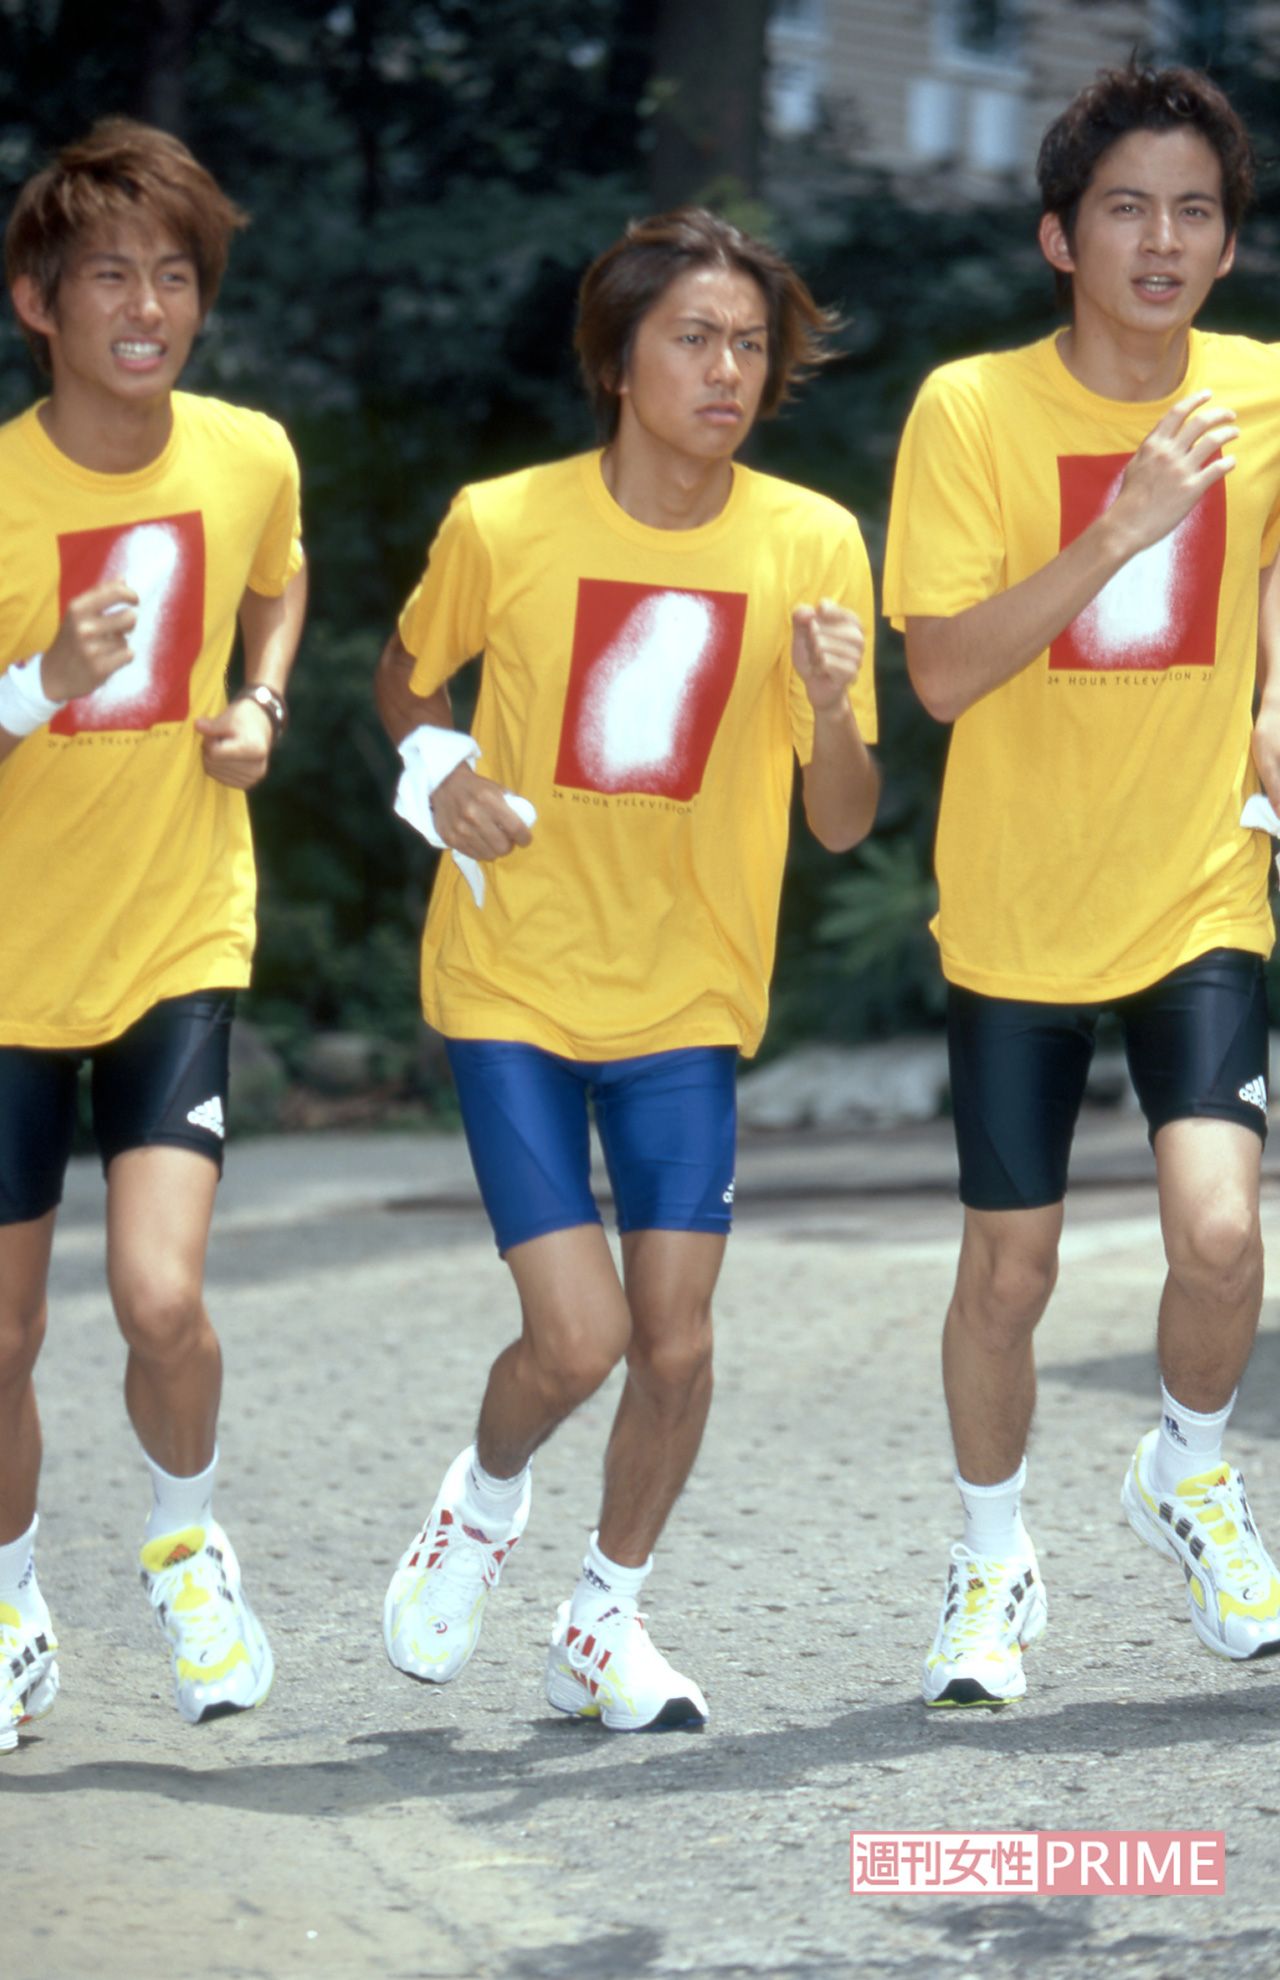 三宅健の画像 写真 98年の日本テレビ系 24時間テレビ でチャリティーマラソンランナーを務めたv6 17歳の岡田はやせ細く 1枚目 週刊女性prime